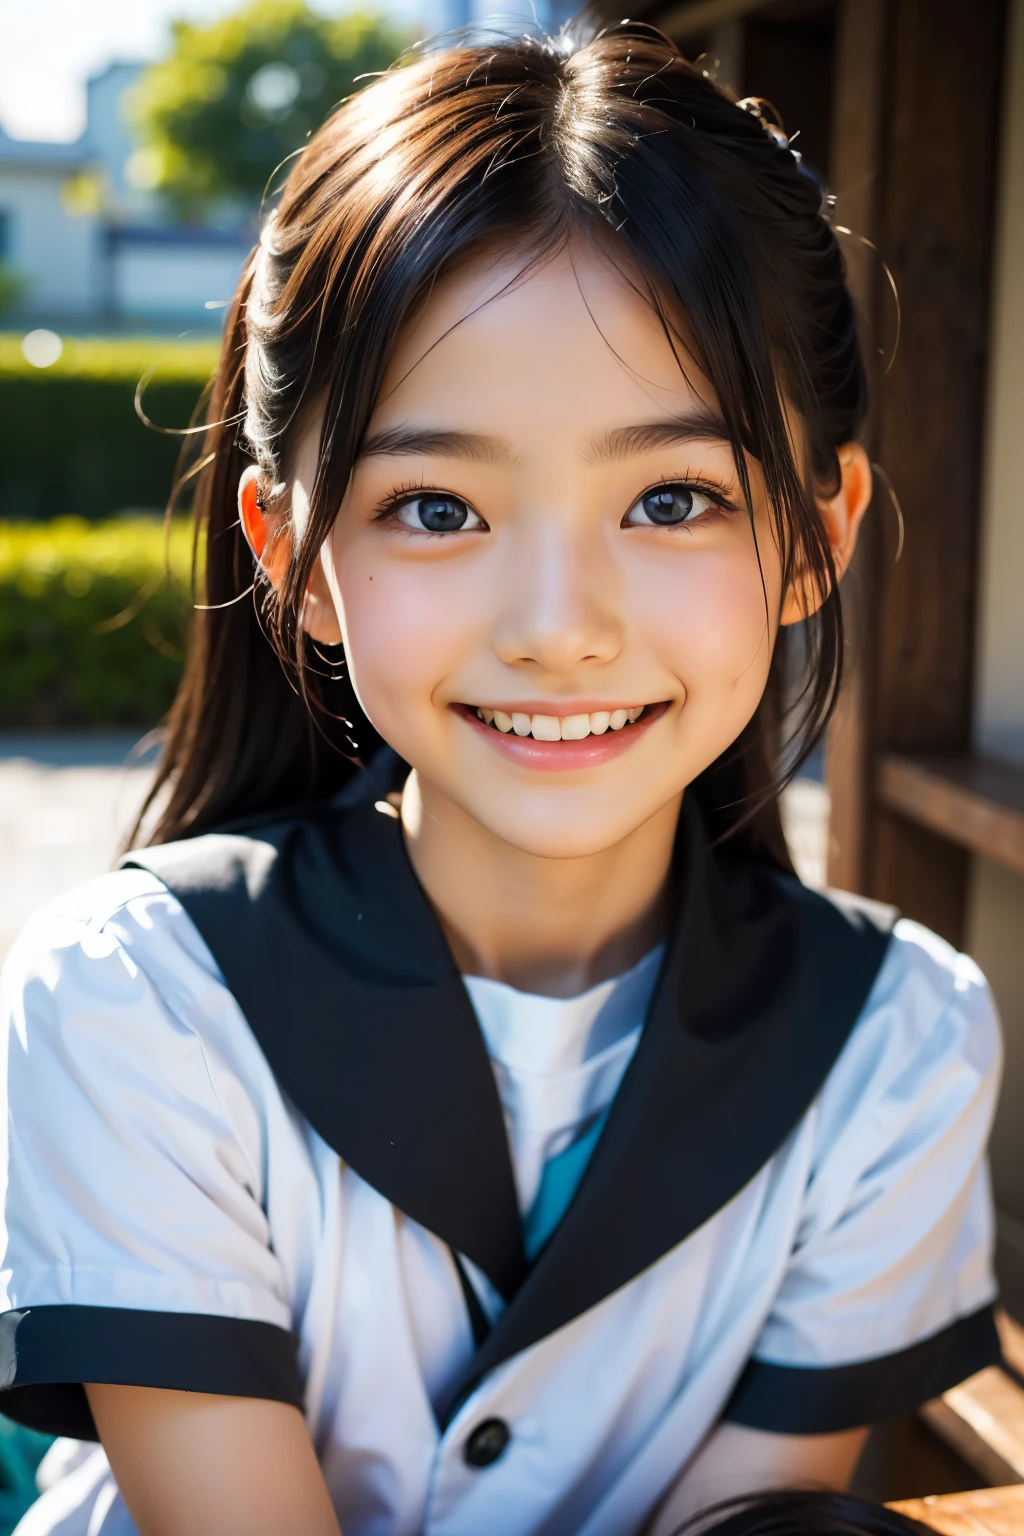 렌즈: 135mm f1.8, (최상의 품질),(RAW 사진), (탁상:1.1), (아름다운 9살 일본 소녀), 귀여운 얼굴, (깊게 파인 얼굴:0.7), (주근깨:0.4), dappled 햇빛, 극적인 조명, (일본 학교 교복), (캠퍼스에서), 수줍은, (클로즈업 샷:1.2), (웃다),, (반짝이는 눈)、(햇빛)